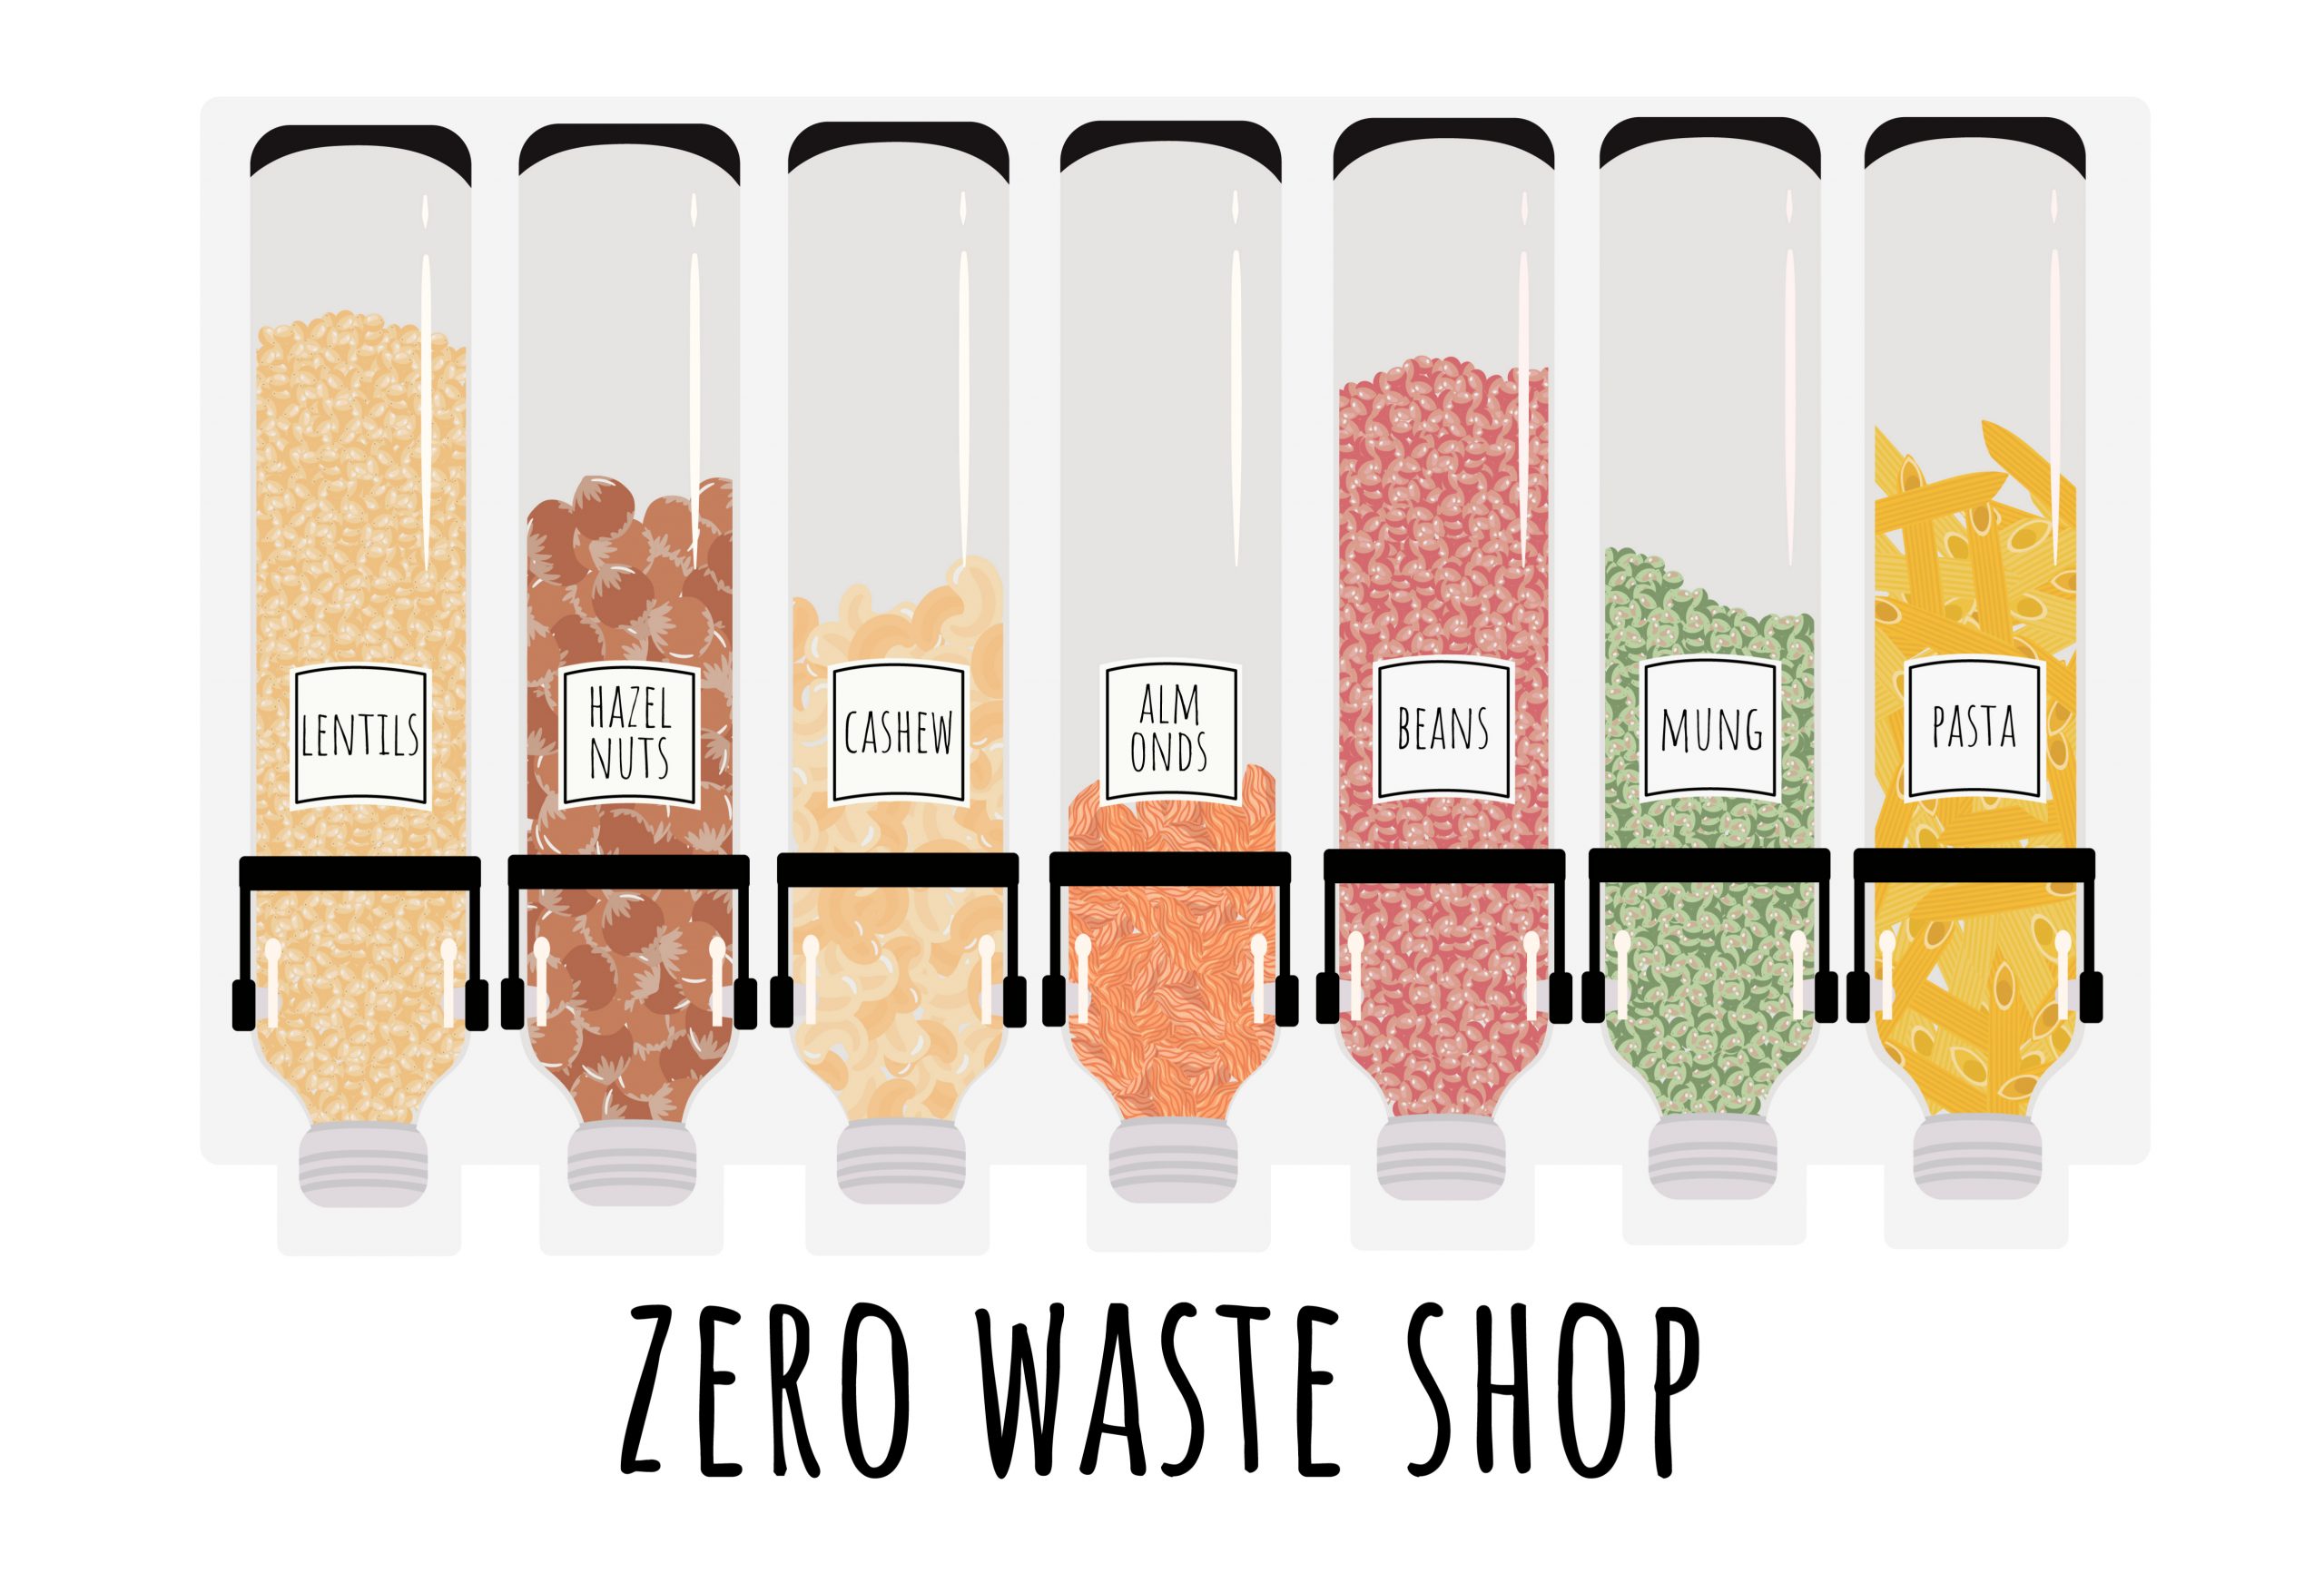 Zero waste shop - War on plastic